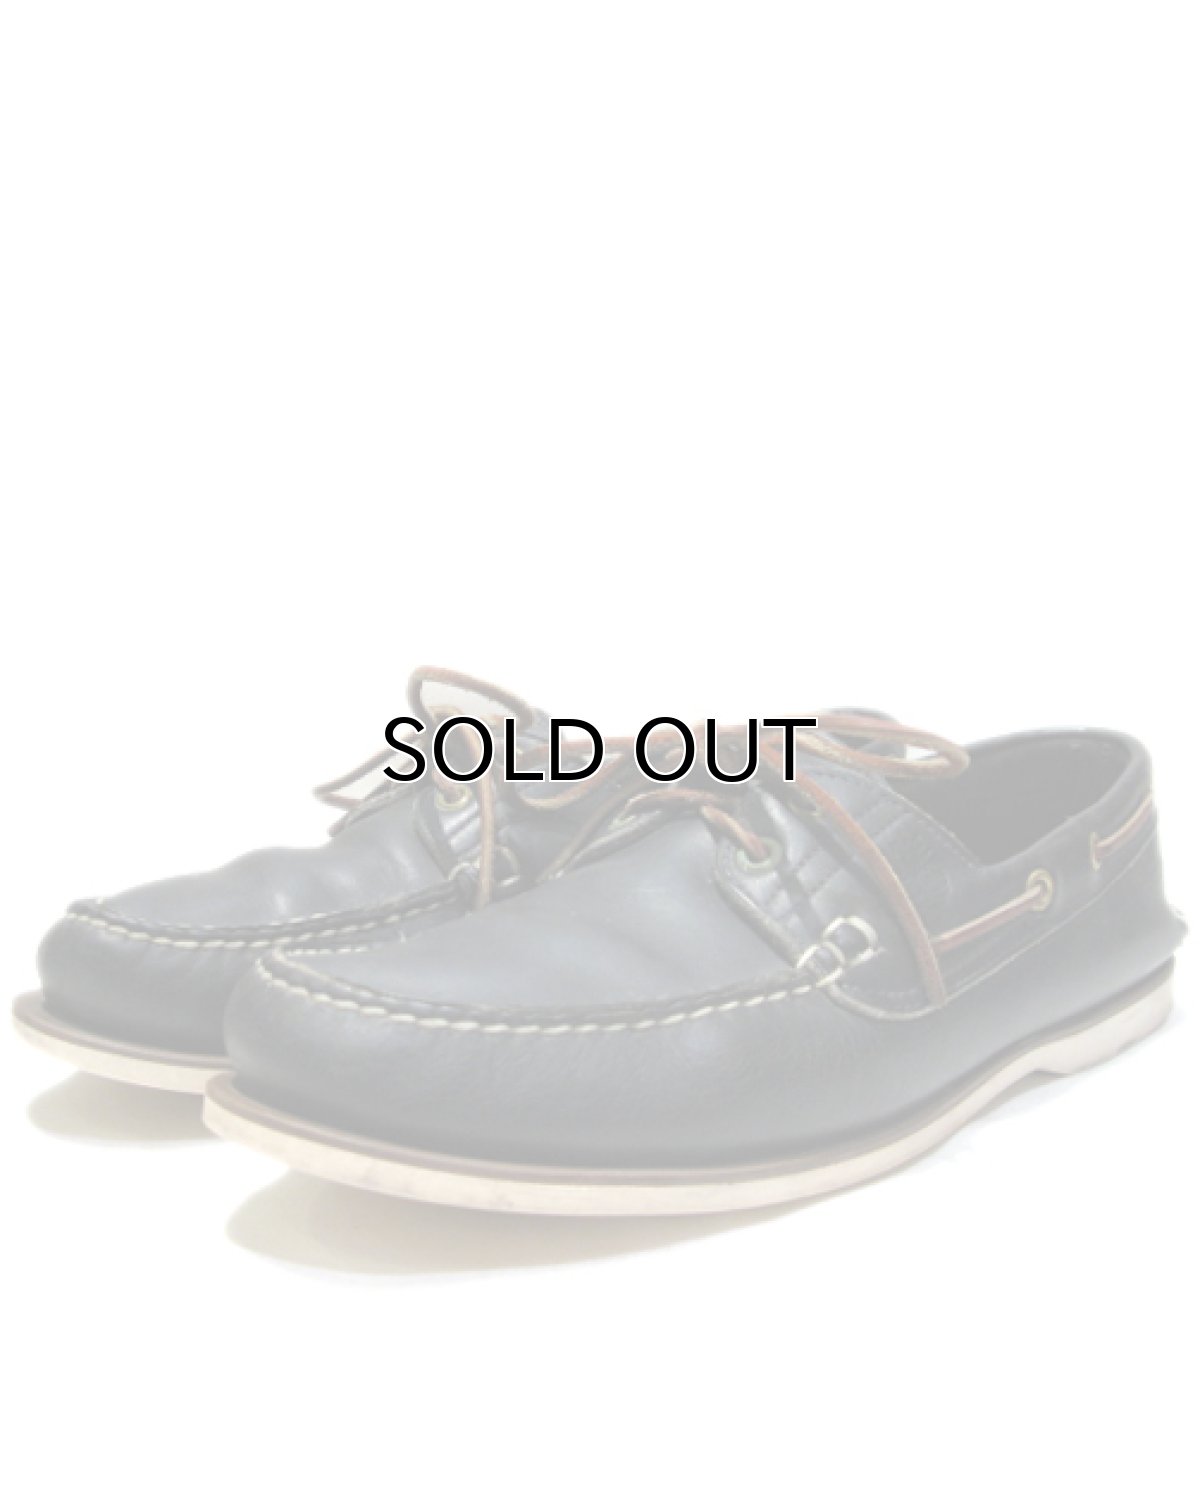 画像1: "Timberland" Leather Deck Shoes -made in USA-　Dark Blue　size 10 (28 cm) (1)